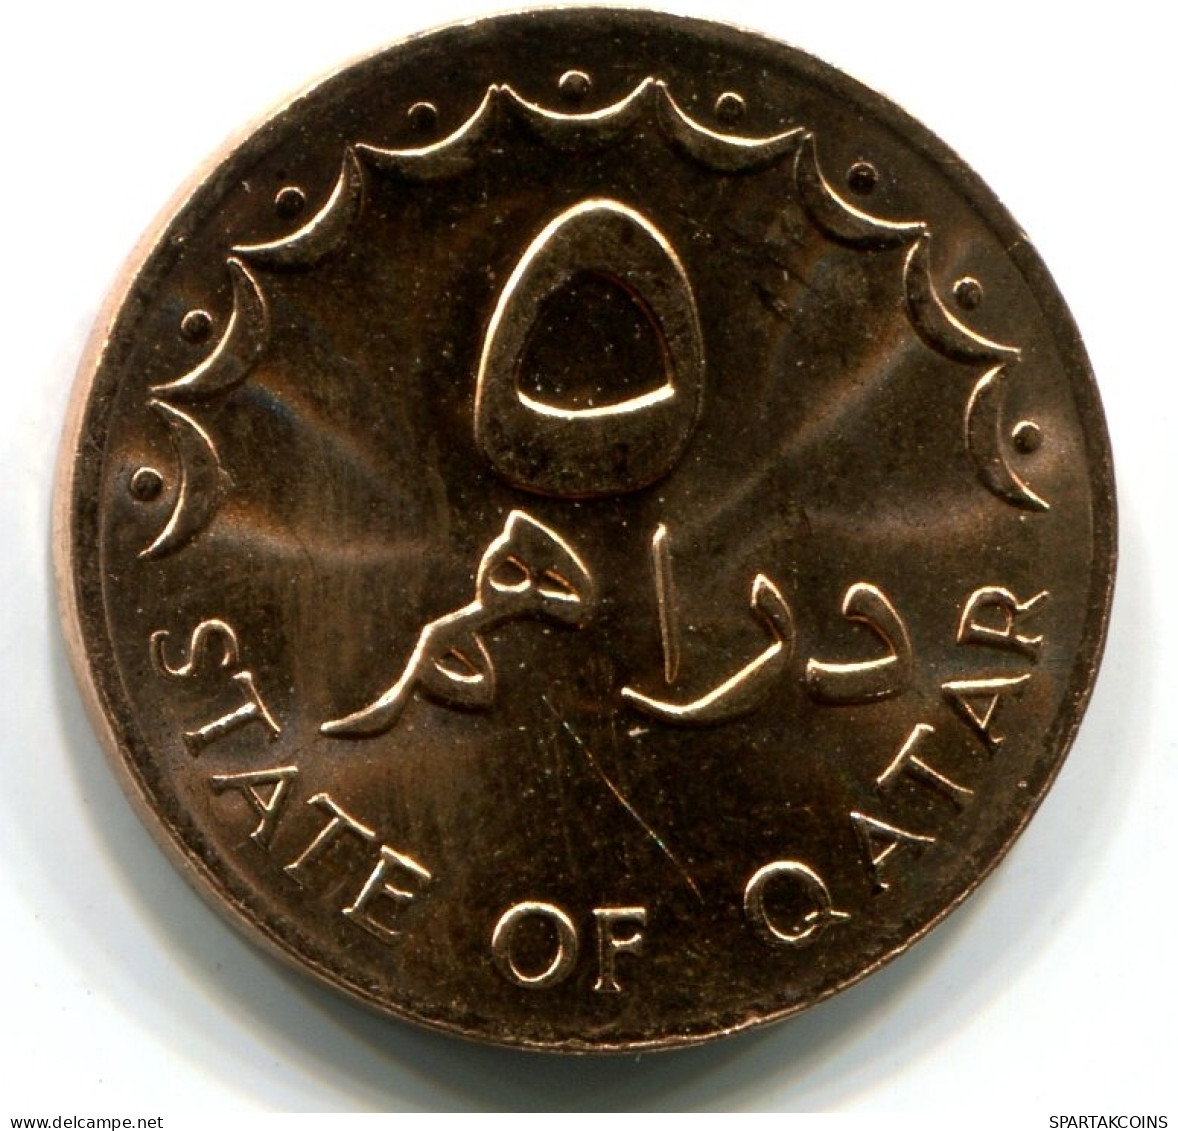 5 DIRHAMS 1978 QATAR UNC Islamic Coin #W11235.U - Qatar